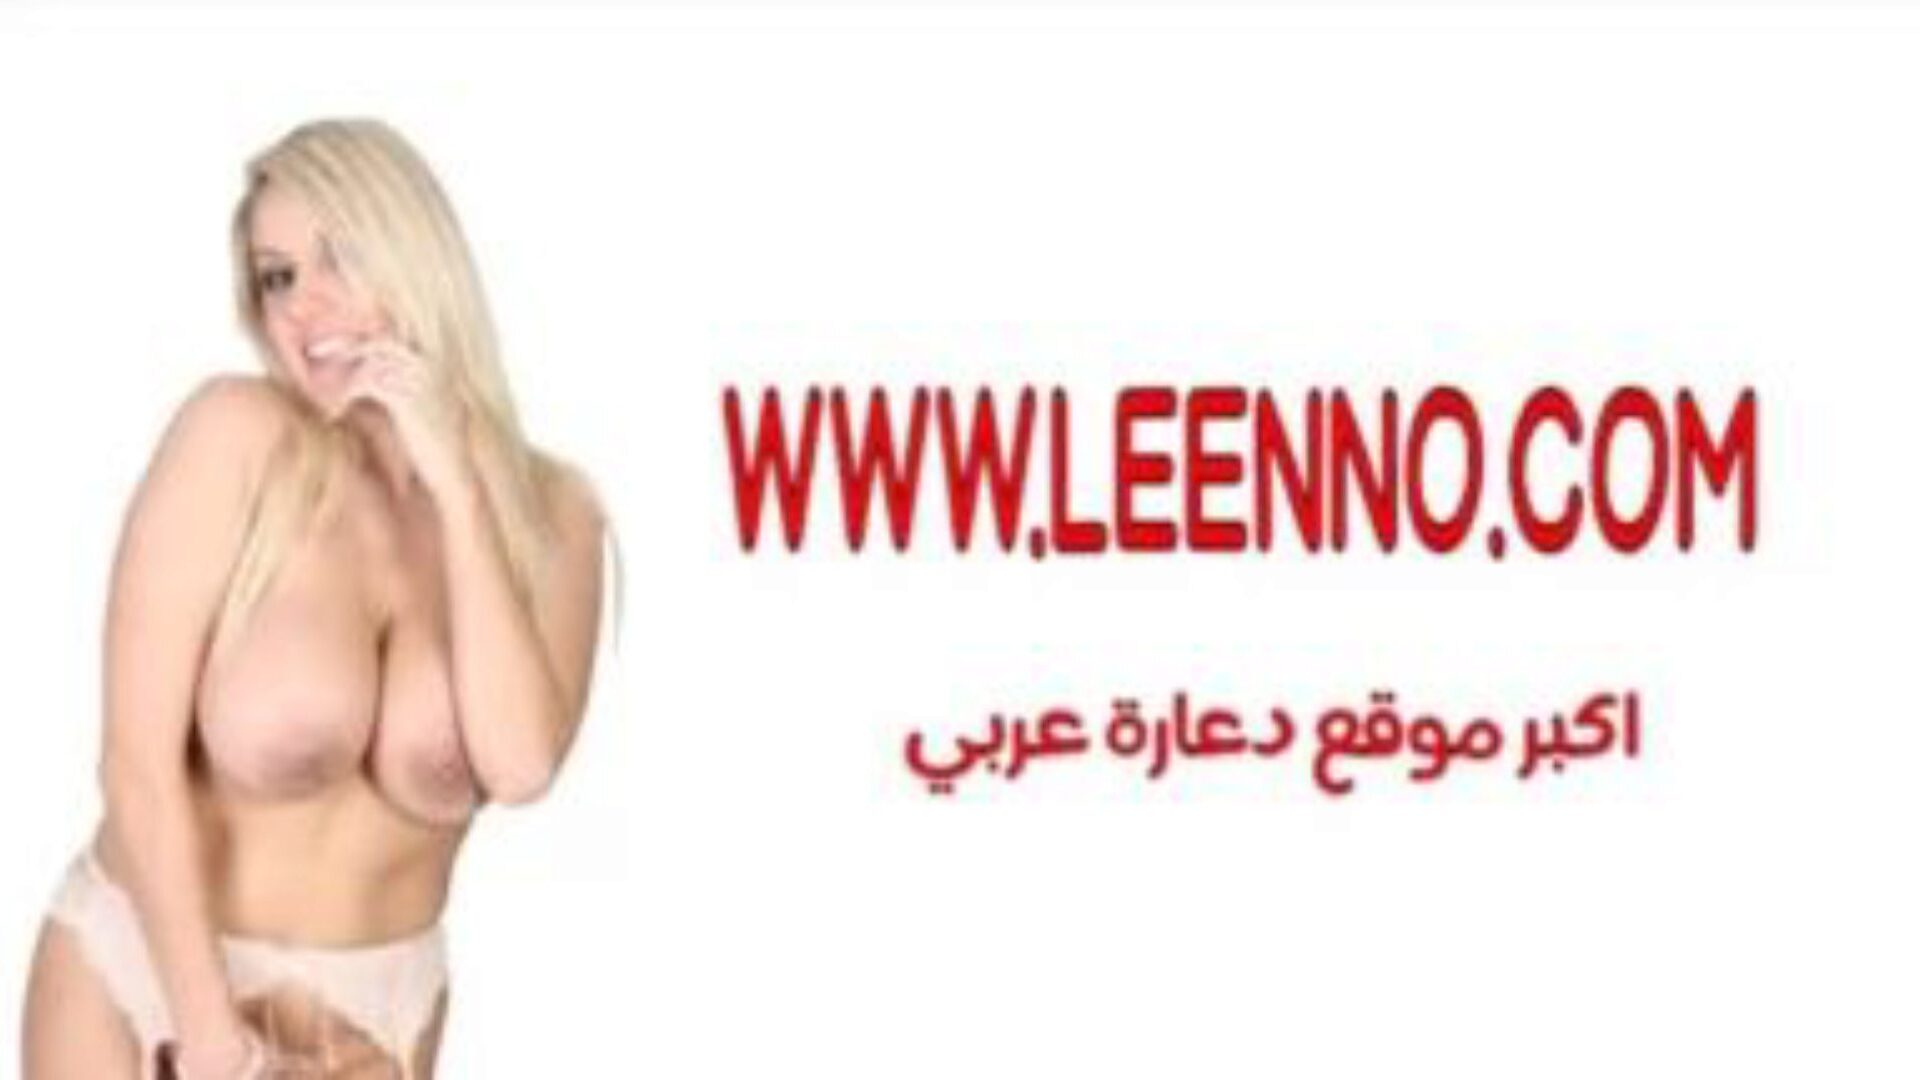 egyptisk sharmota 1: arabisk sharmota porno video e1 - xhamster se egyptisk sharmota 1 tube pukkel filmscene til gratis-for-alle på xhamster, med den fantastiske lyst af arabiske arabiske sharmota, xxx 1 & 1 xxx porno klip scener